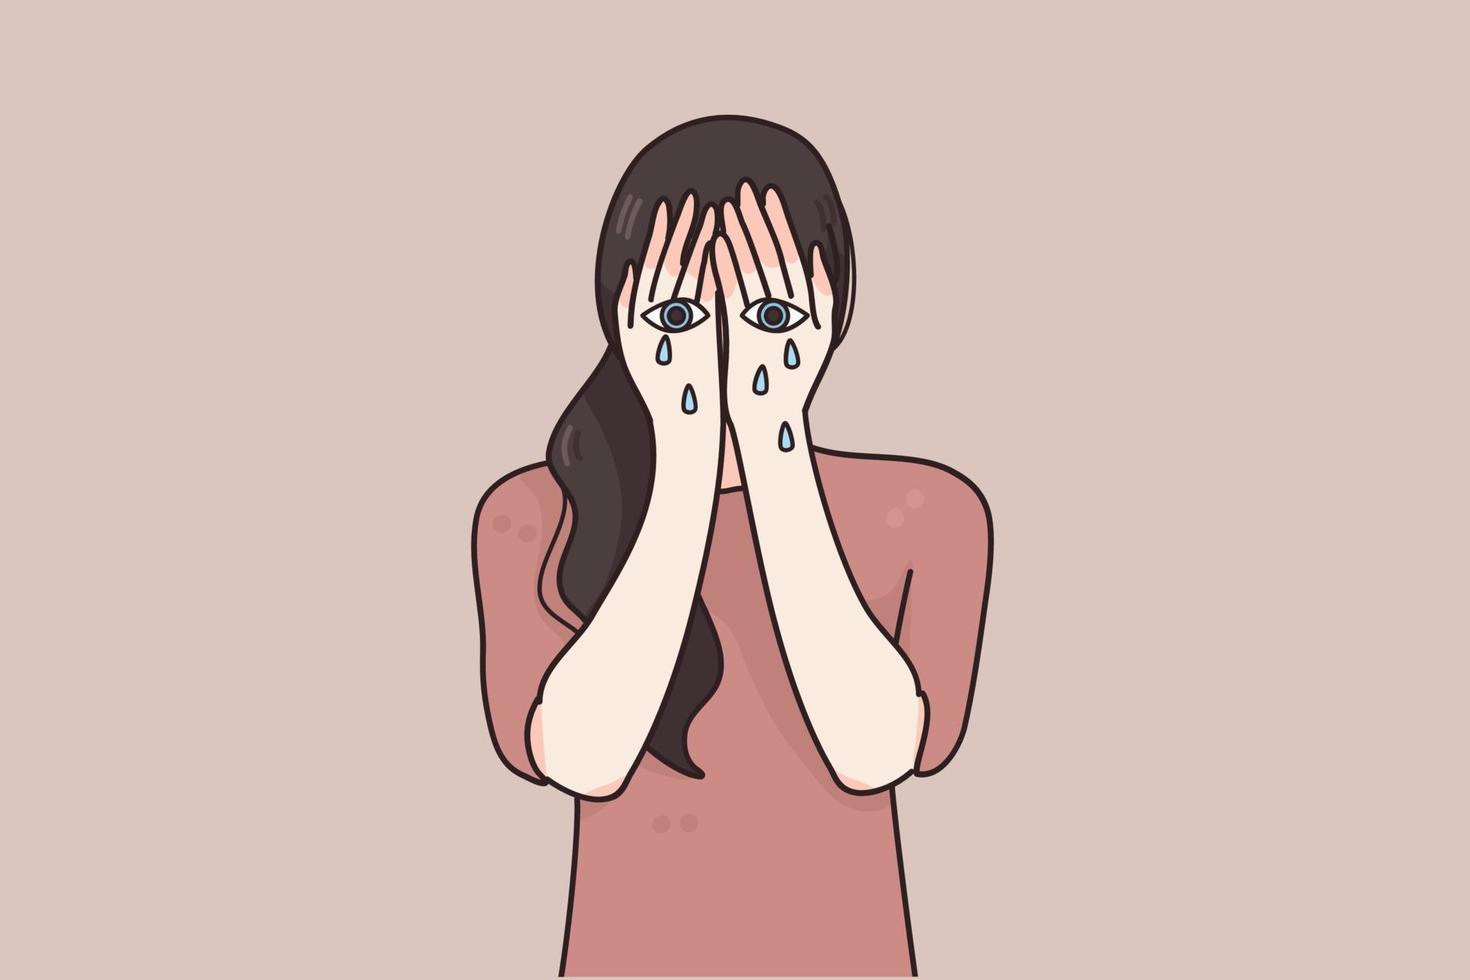 tristeza, dolor, concepto de desesperación. personaje de dibujos animados de mujer joven llorando con los ojos pintados en sus manos y llorando con lágrimas sintiéndose estresada deprimida ilustración vectorial infeliz vector